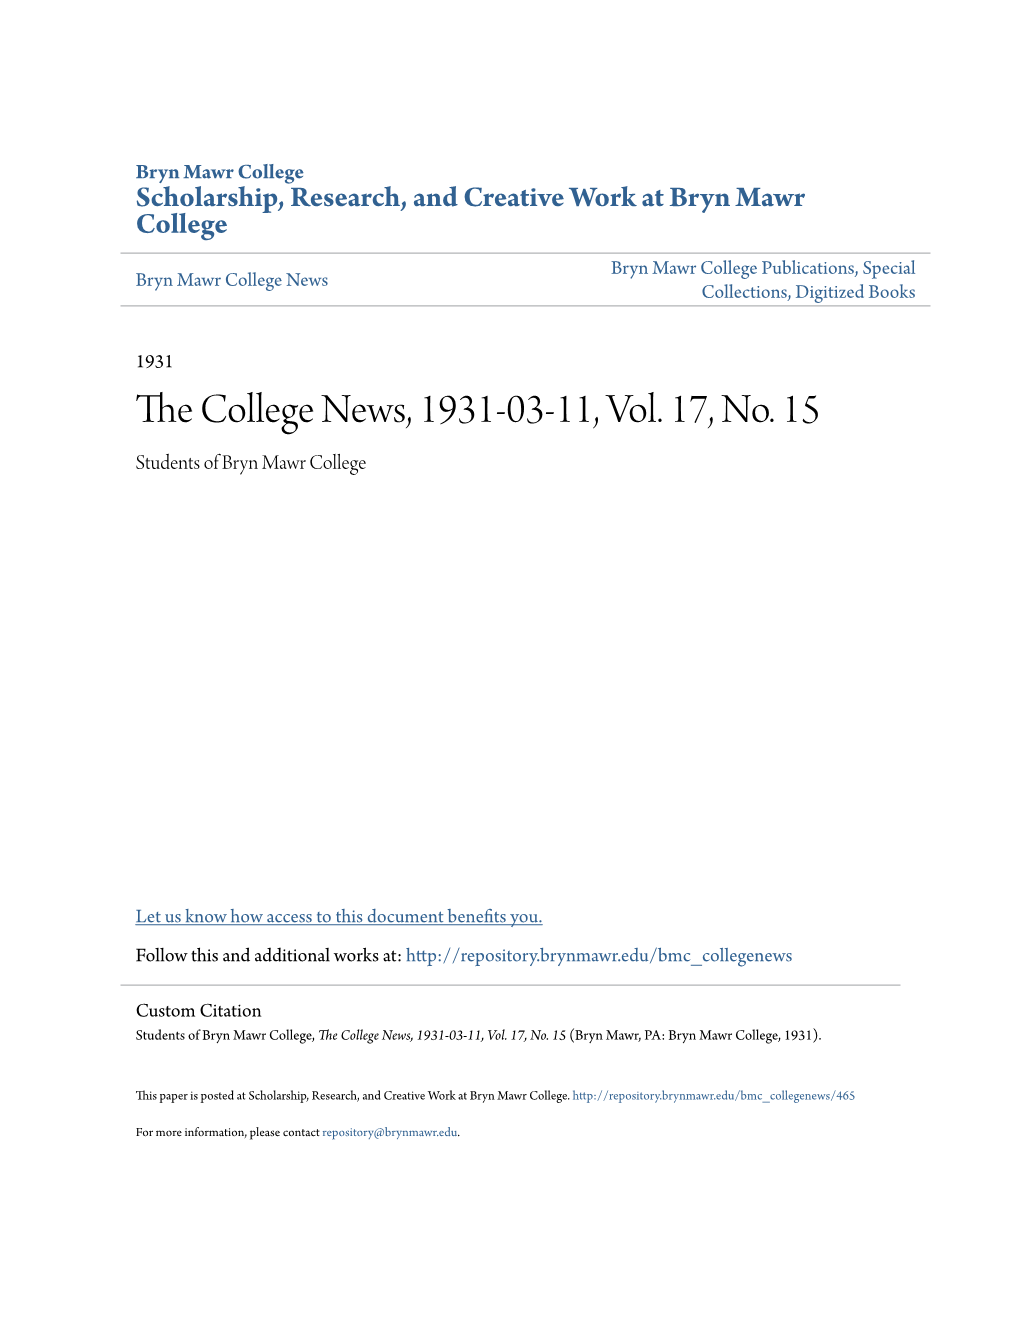 The College News, 1931-03-11, Vol. 17, No. 15 (Bryn Mawr, PA: Bryn Mawr College, 1931)